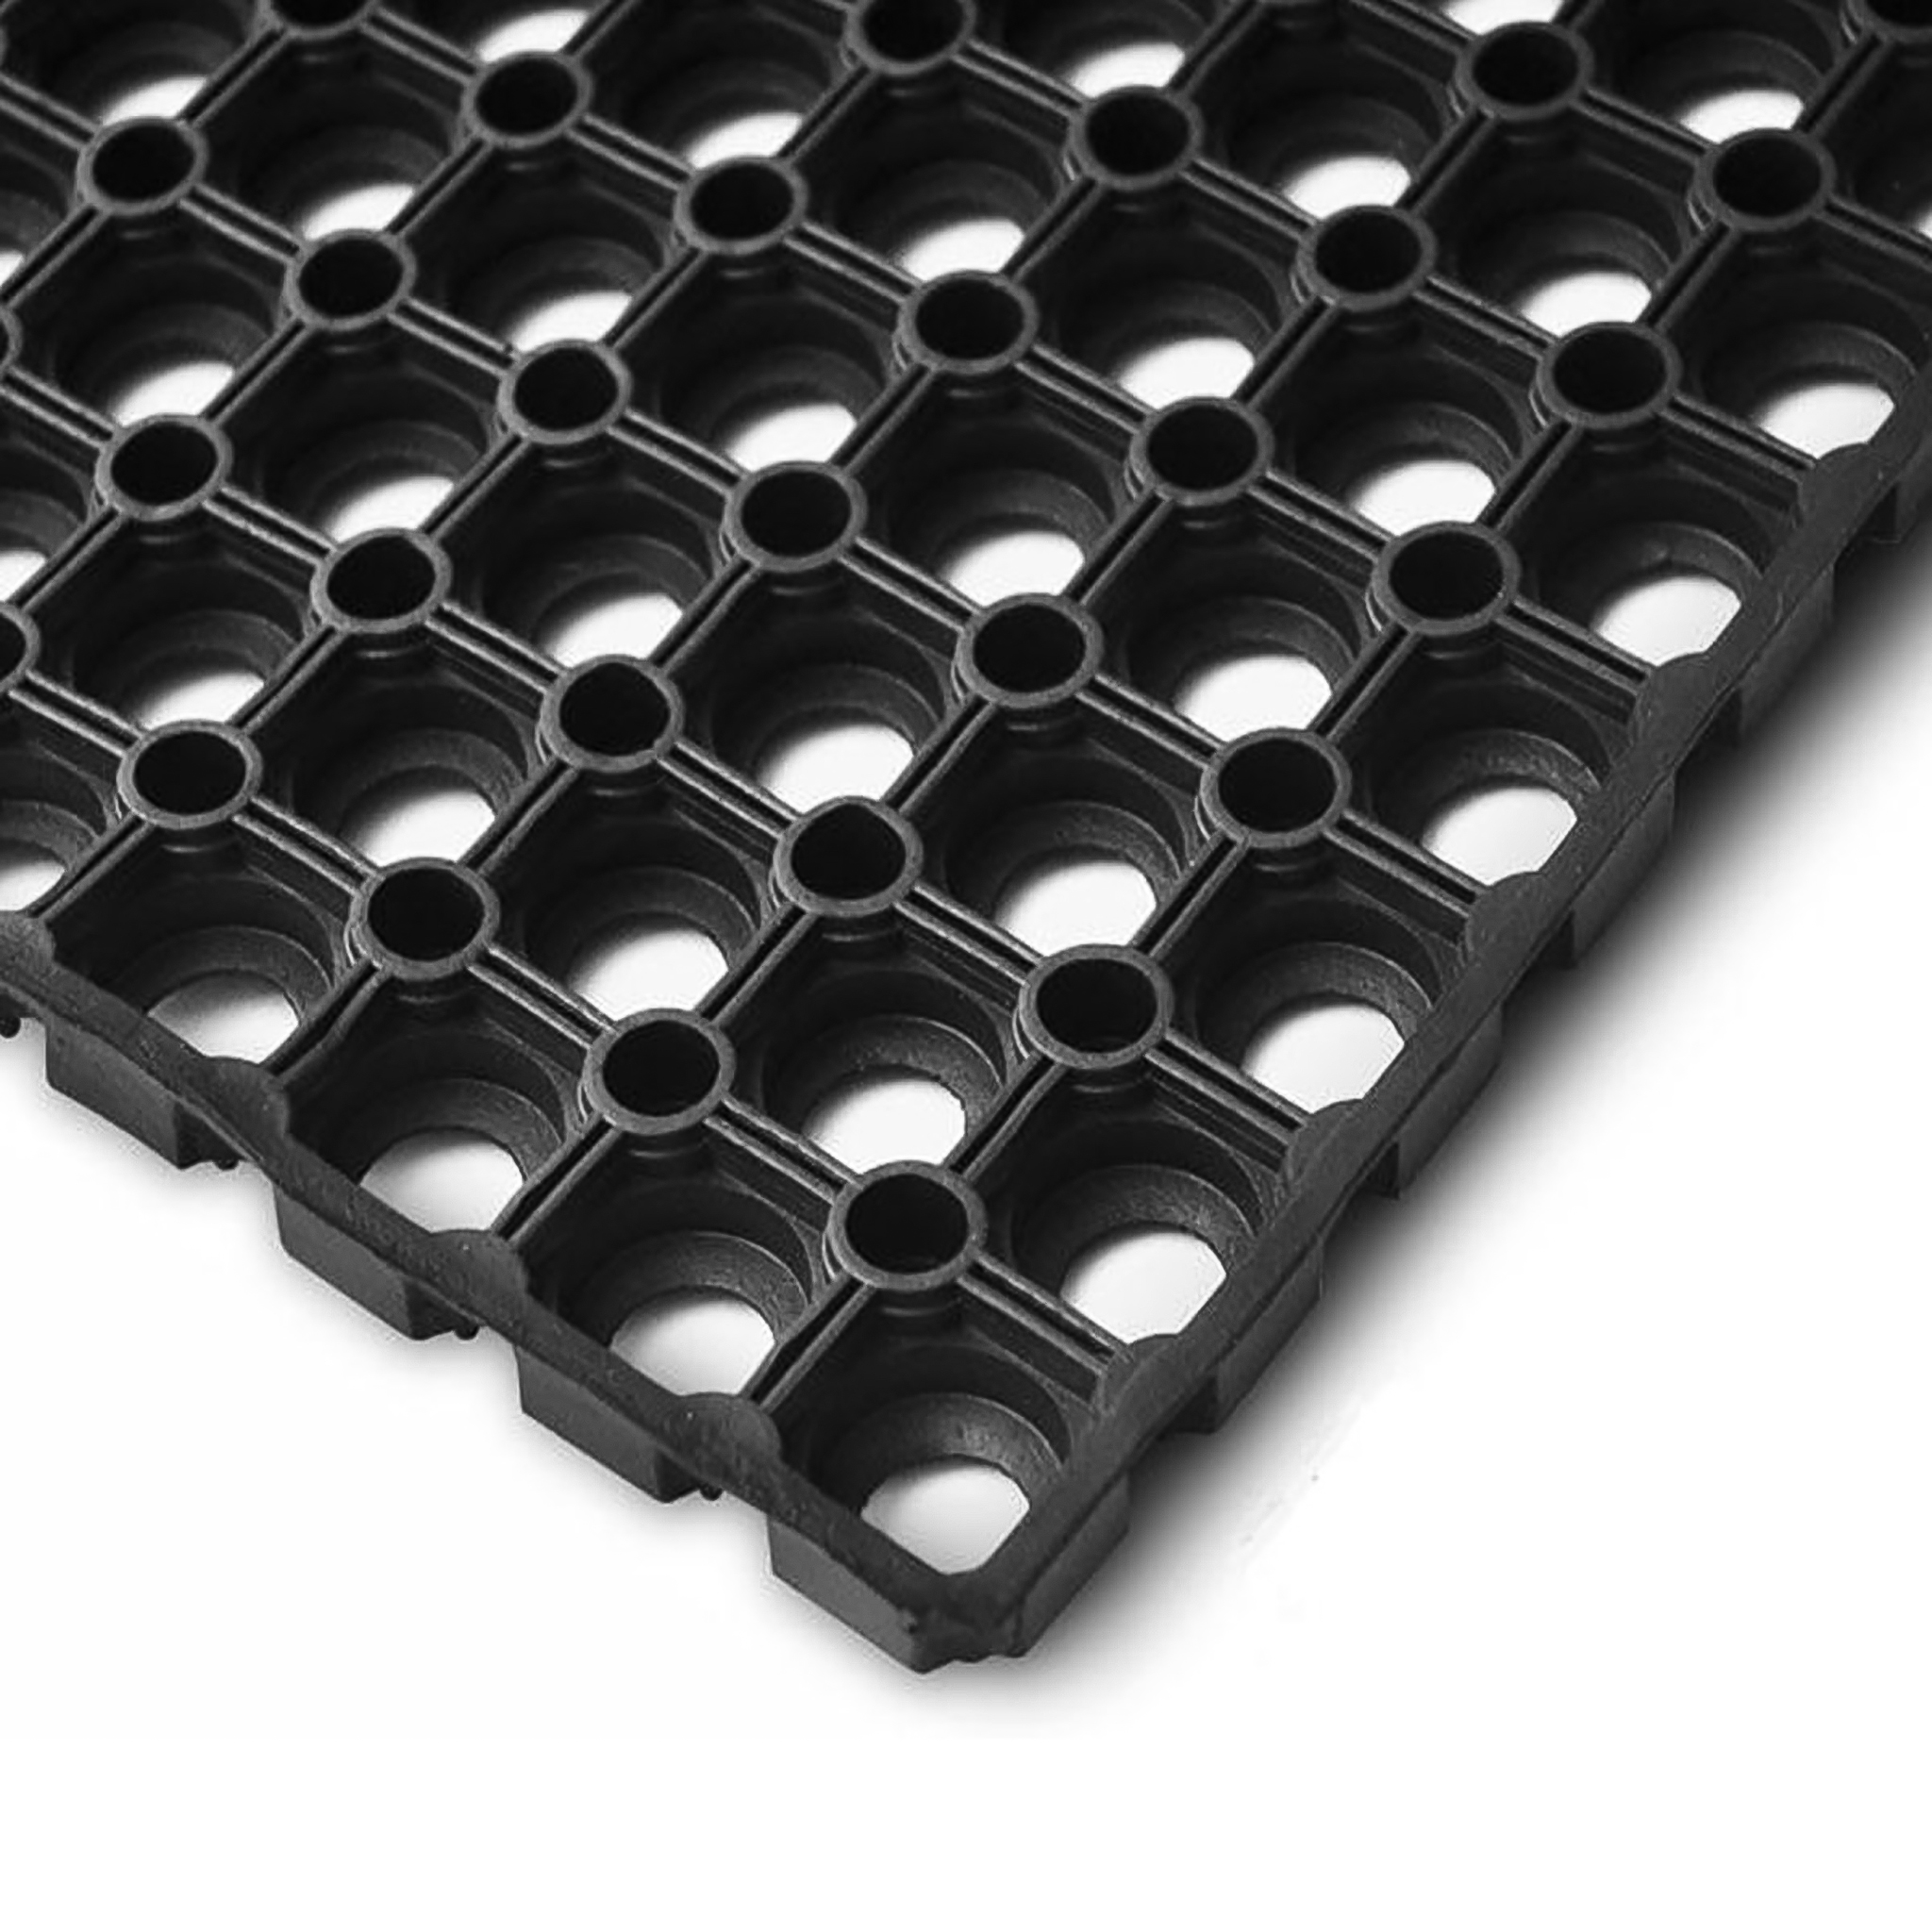 Rubber honeycomb mat 80x120cm